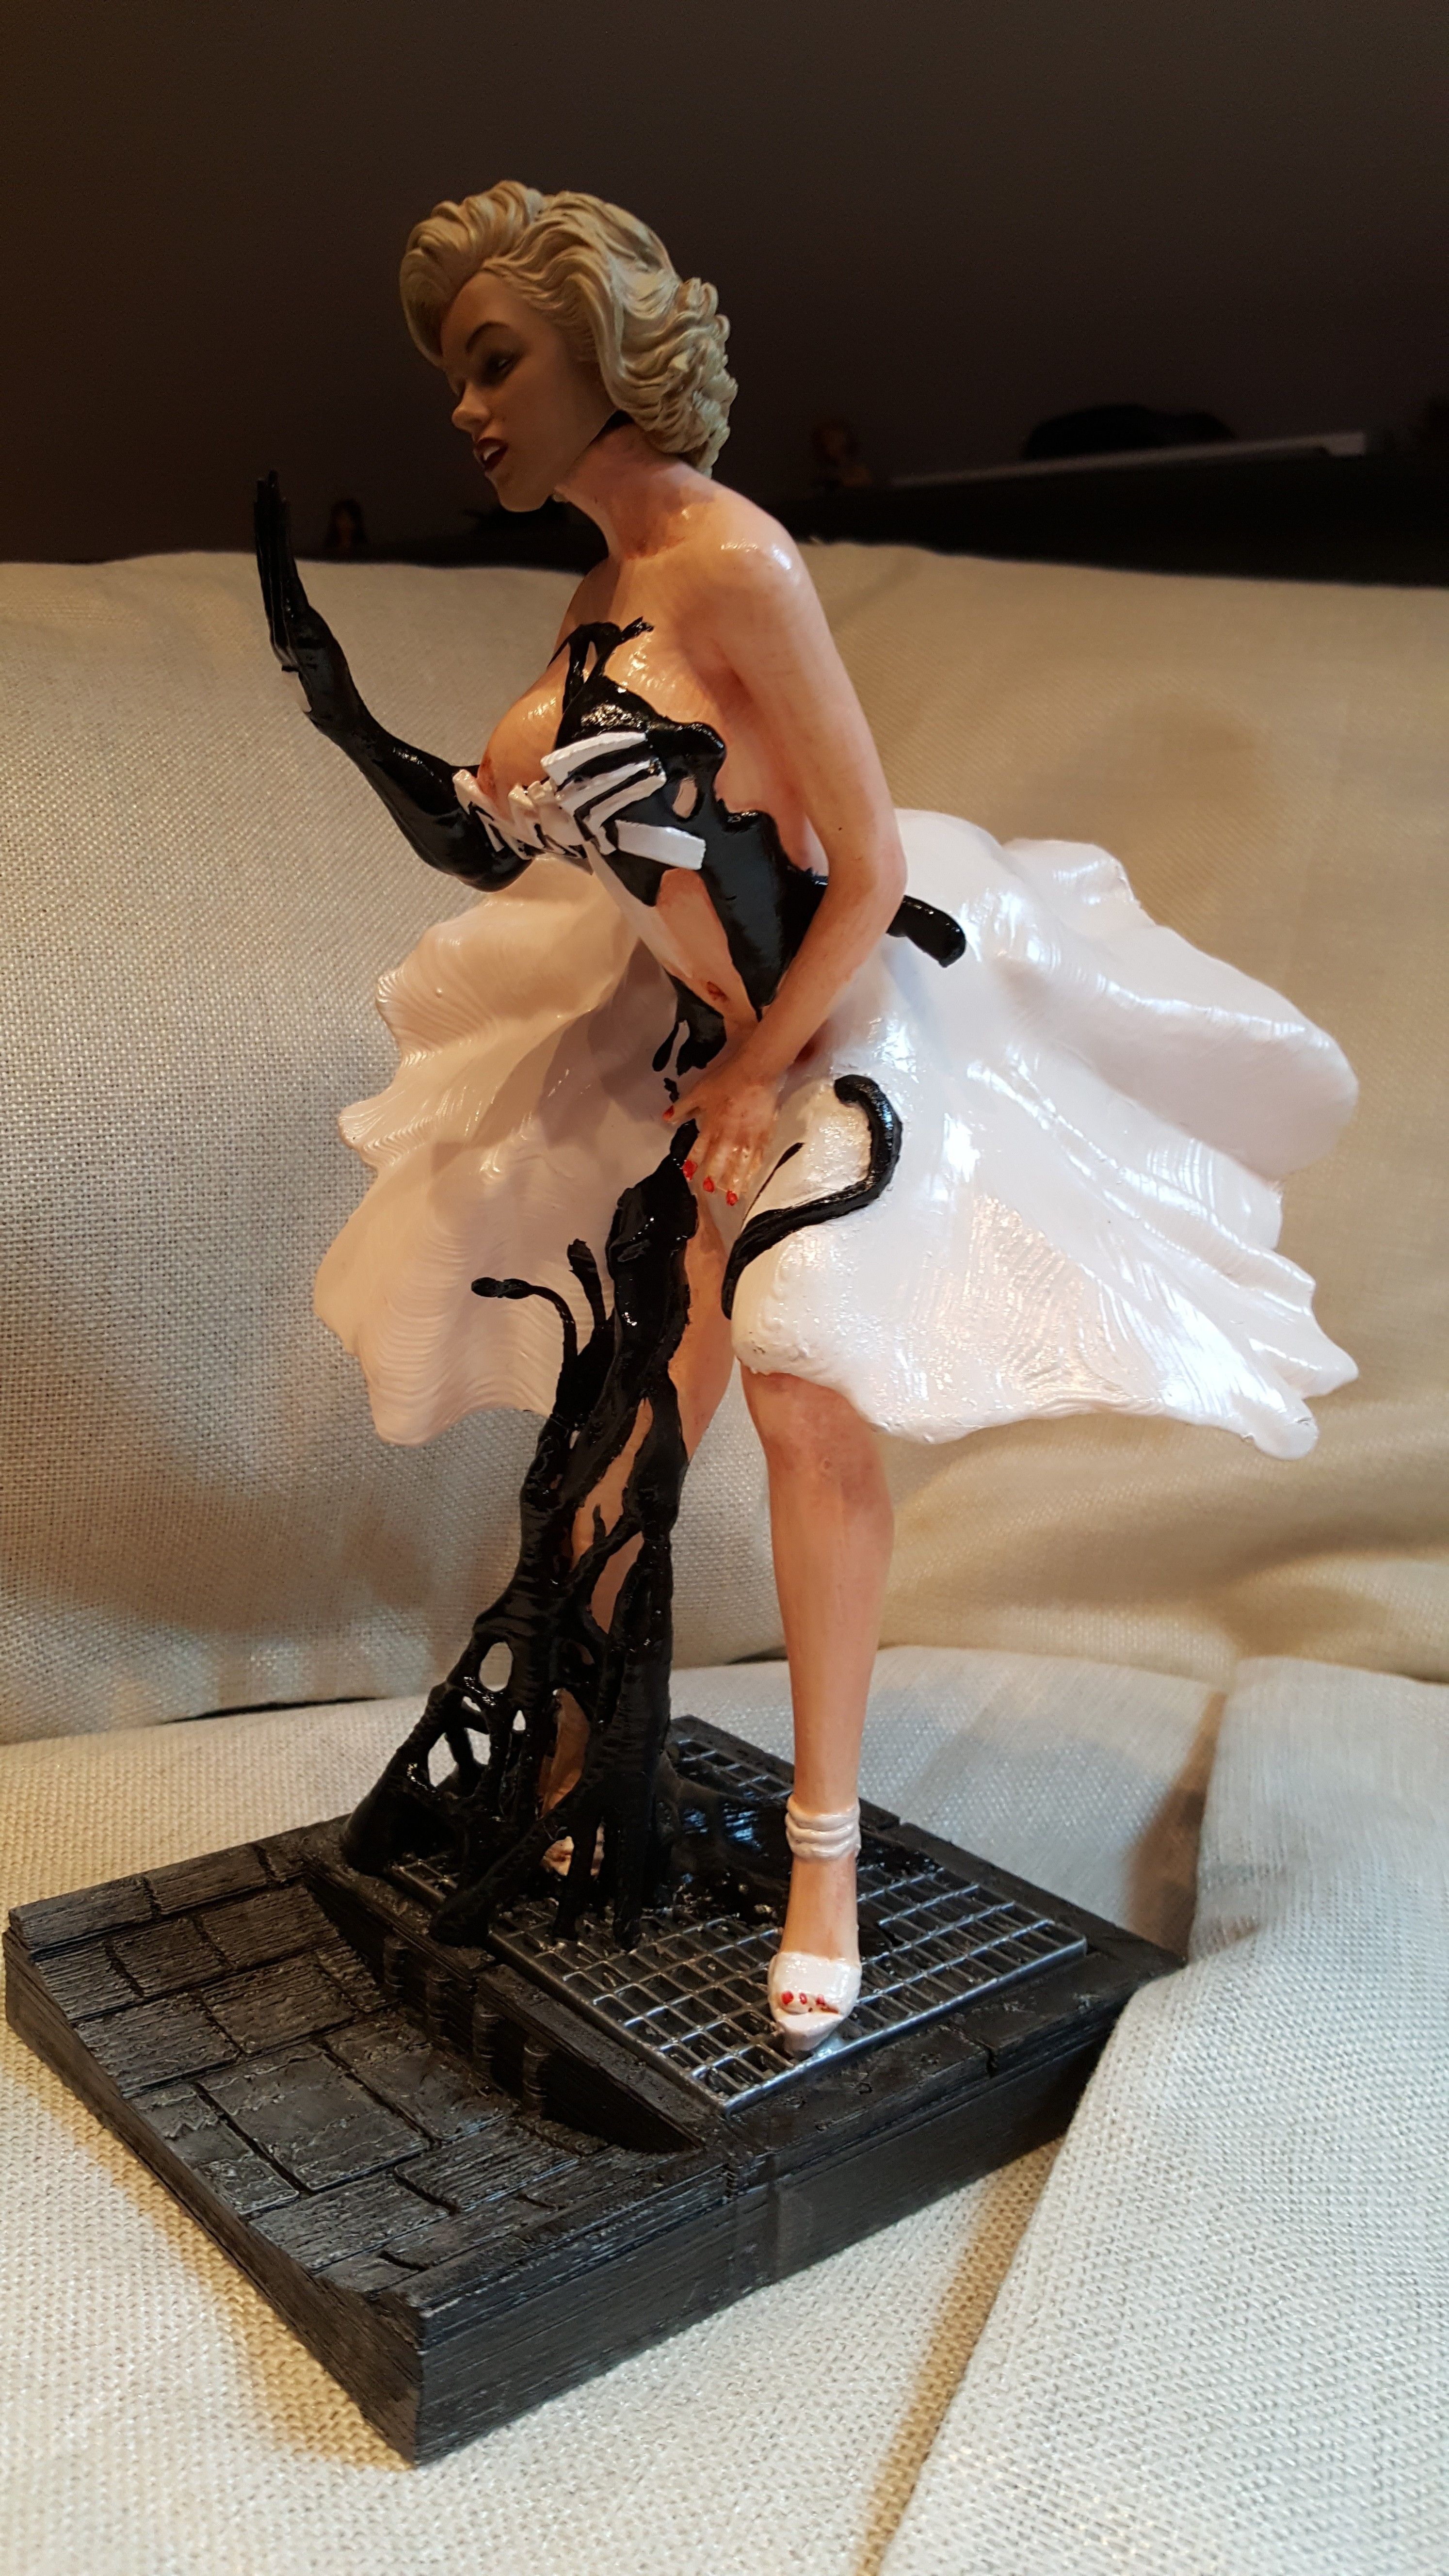 20180318_143943.jpg STL-Datei Mary Jane Monroe aka Female Venom - Bimbo Series Model 2 - by SPARX kostenlos herunterladen • 3D-Drucker-Design, SparxBM